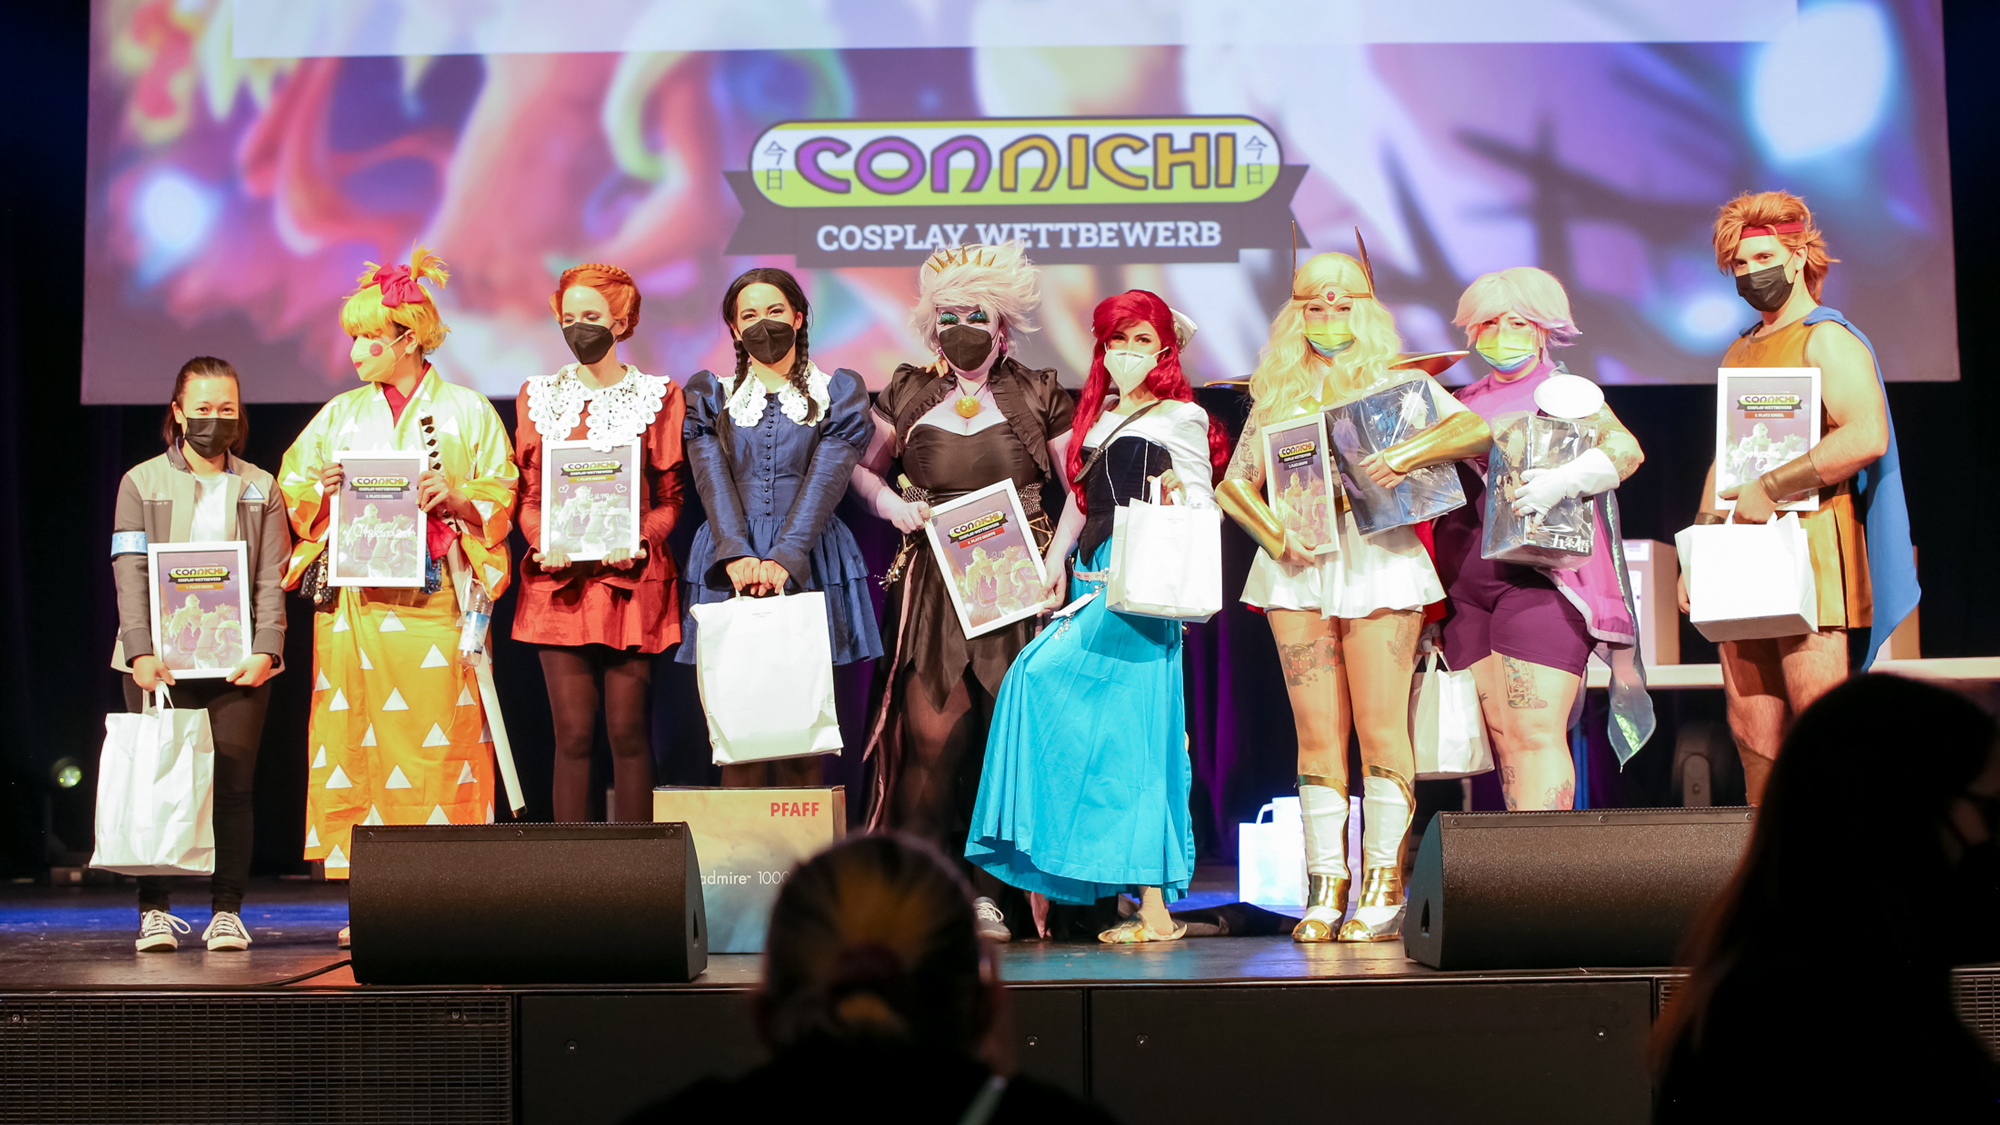 Connichi-Cosplay-Wettbewerb: Anmeldung öffnet am 23. Juni 2023!